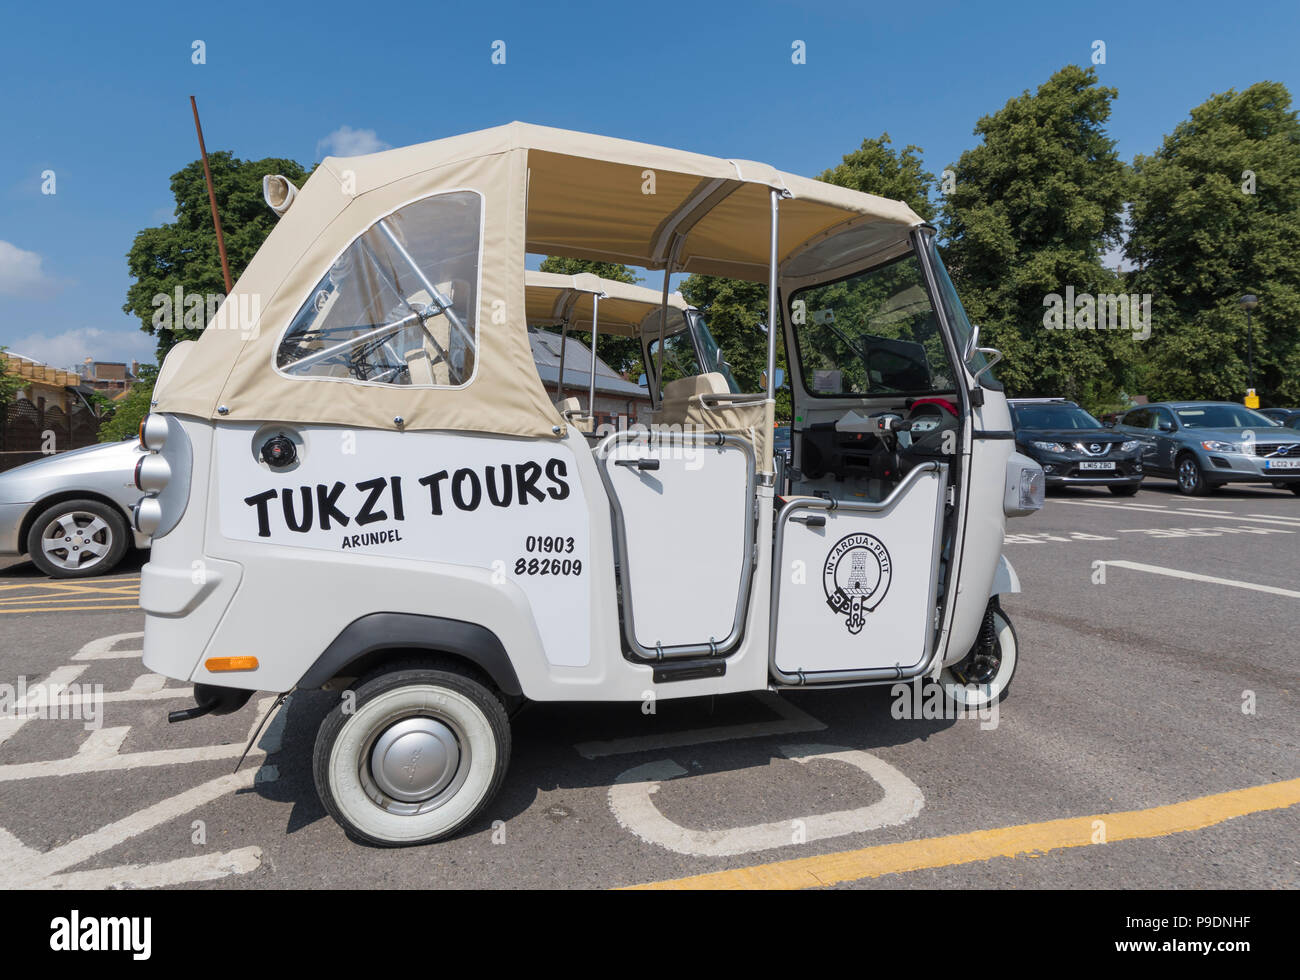 Un Piaggio Ape Calessino blanche vide 3 chariot (communément appelé un Tuk Tuk) véhicule d'Tukzi Tours in Arundel, West Sussex, Angleterre, Royaume-Uni. Banque D'Images